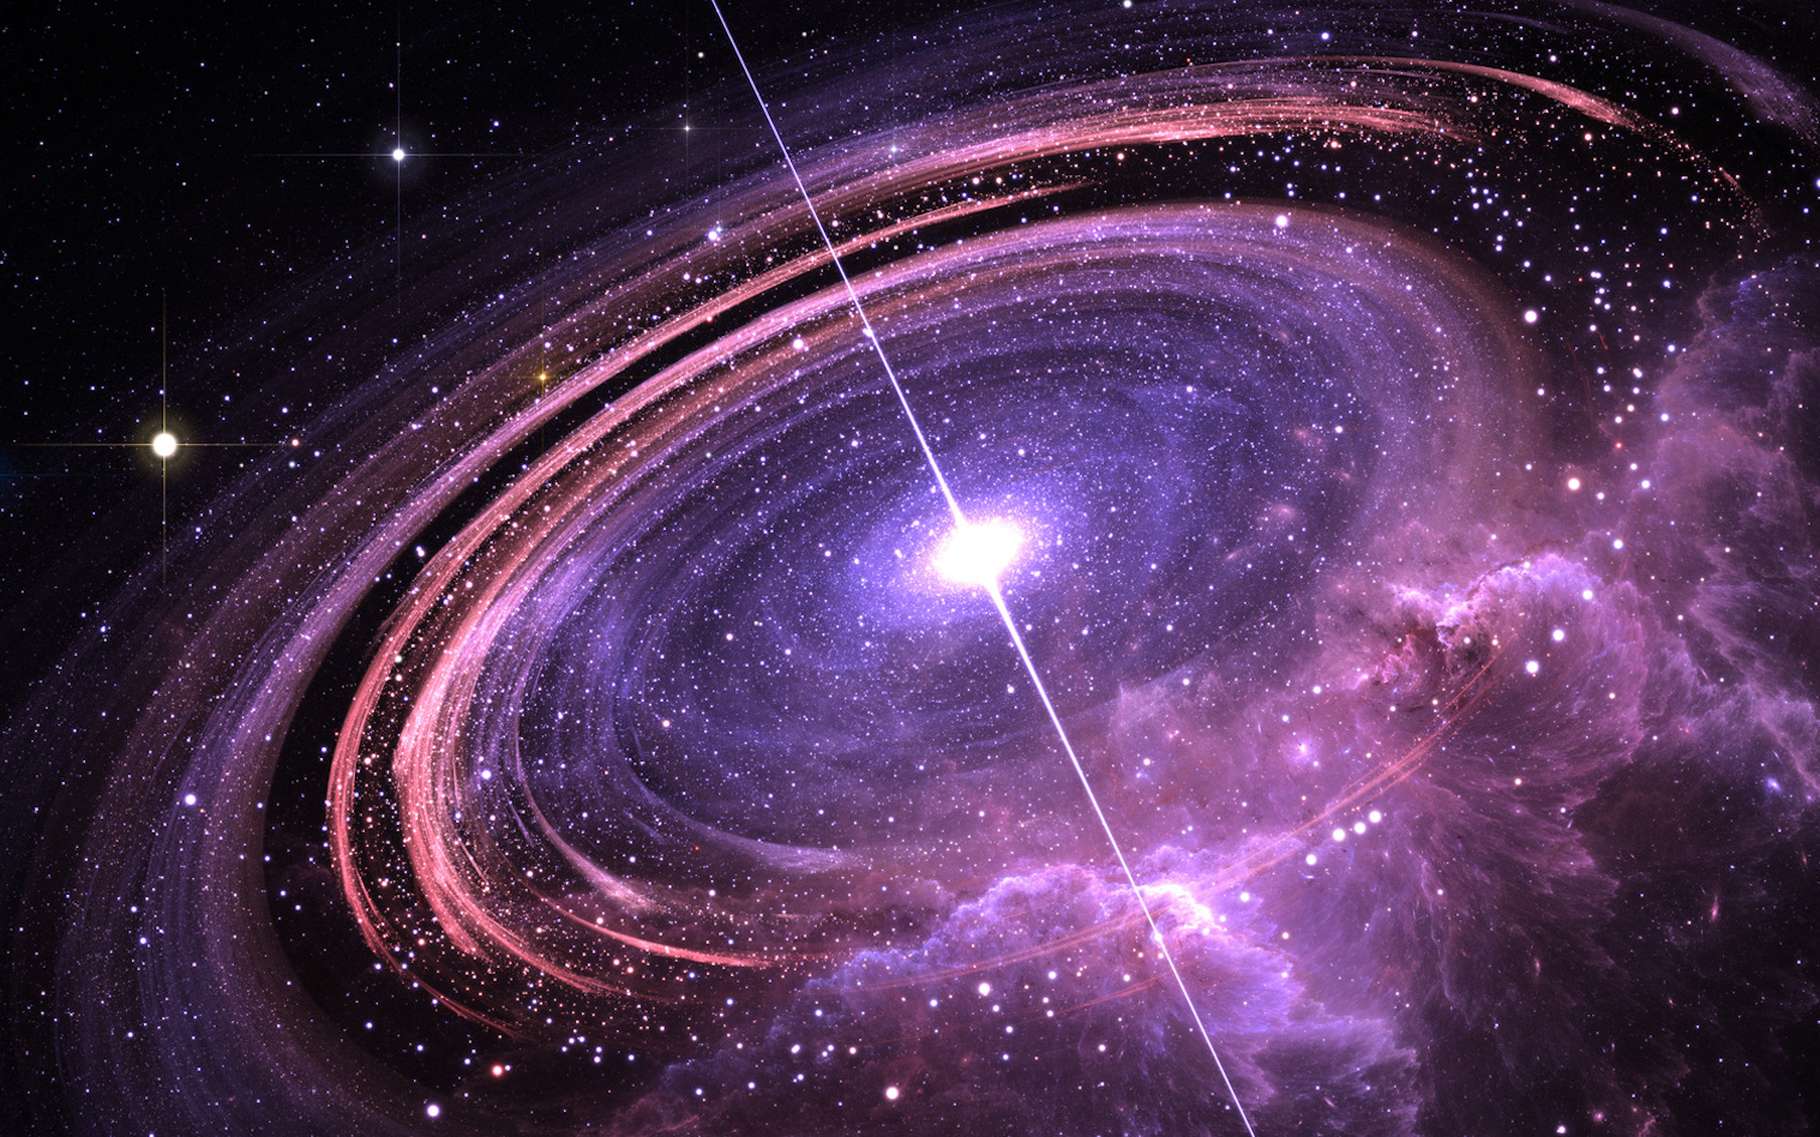 Un pulsar pour guider les futurs vaisseaux spatiaux lors des voyages interstellaires ? © Peter Jurik, Adobe Stock